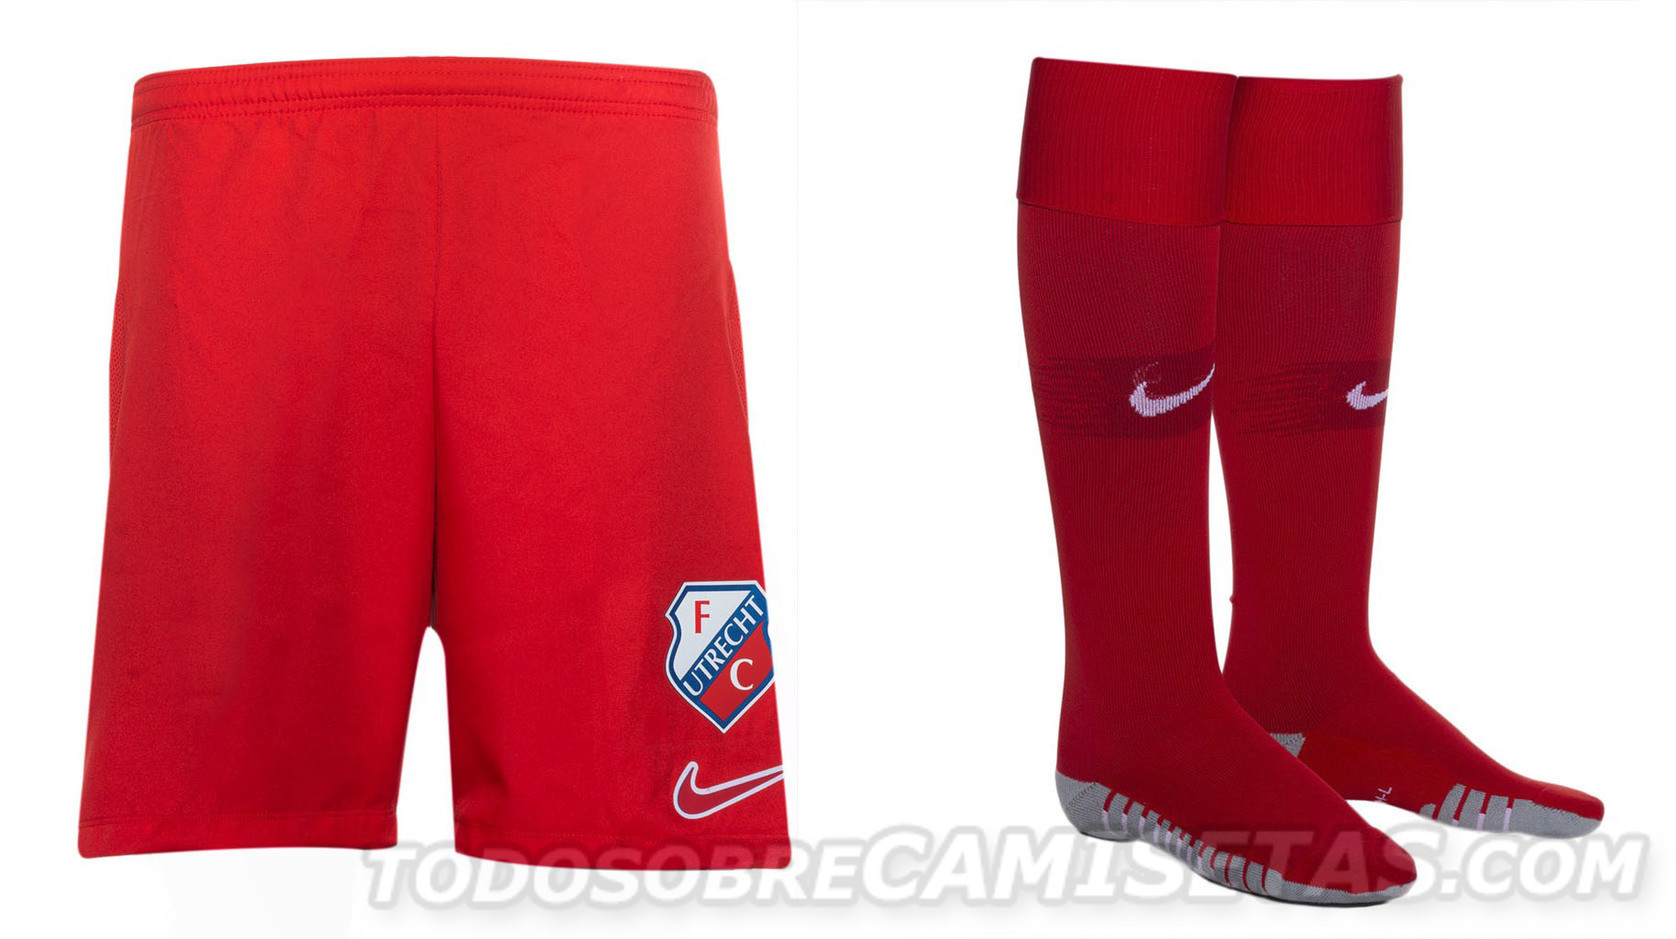 FC Utrecht 2019-20 Nike Home Kit